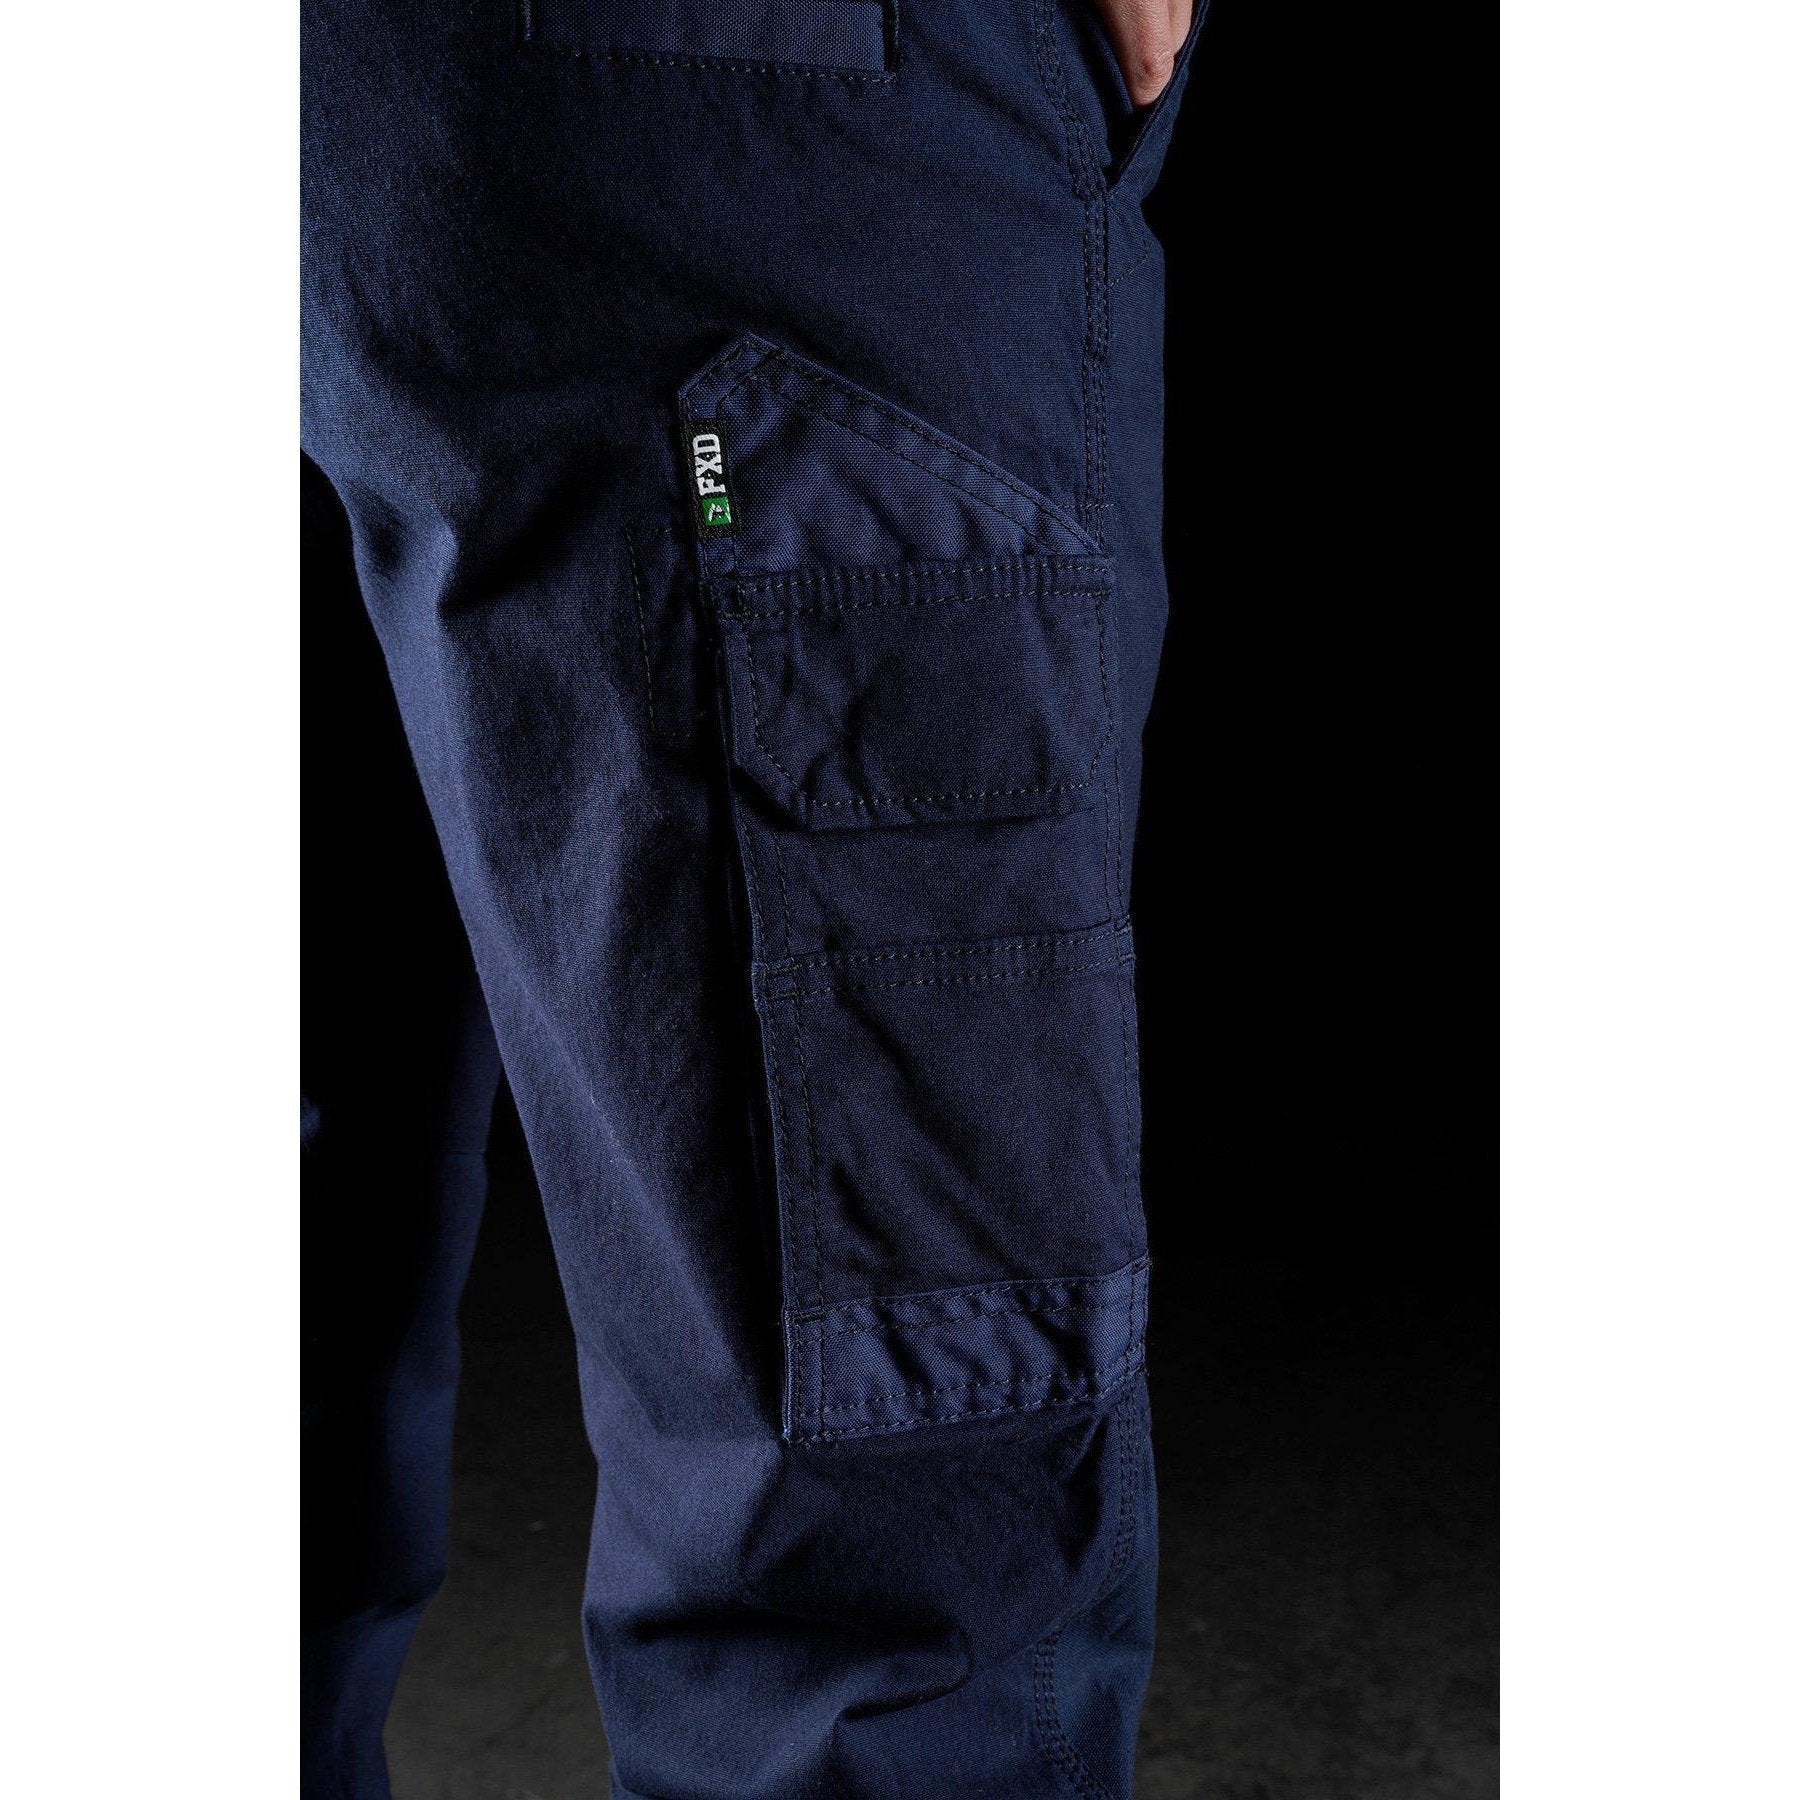 FXD WP-3W Ladies Stretch Work Pants (FX11906200) - Khaki - LOD